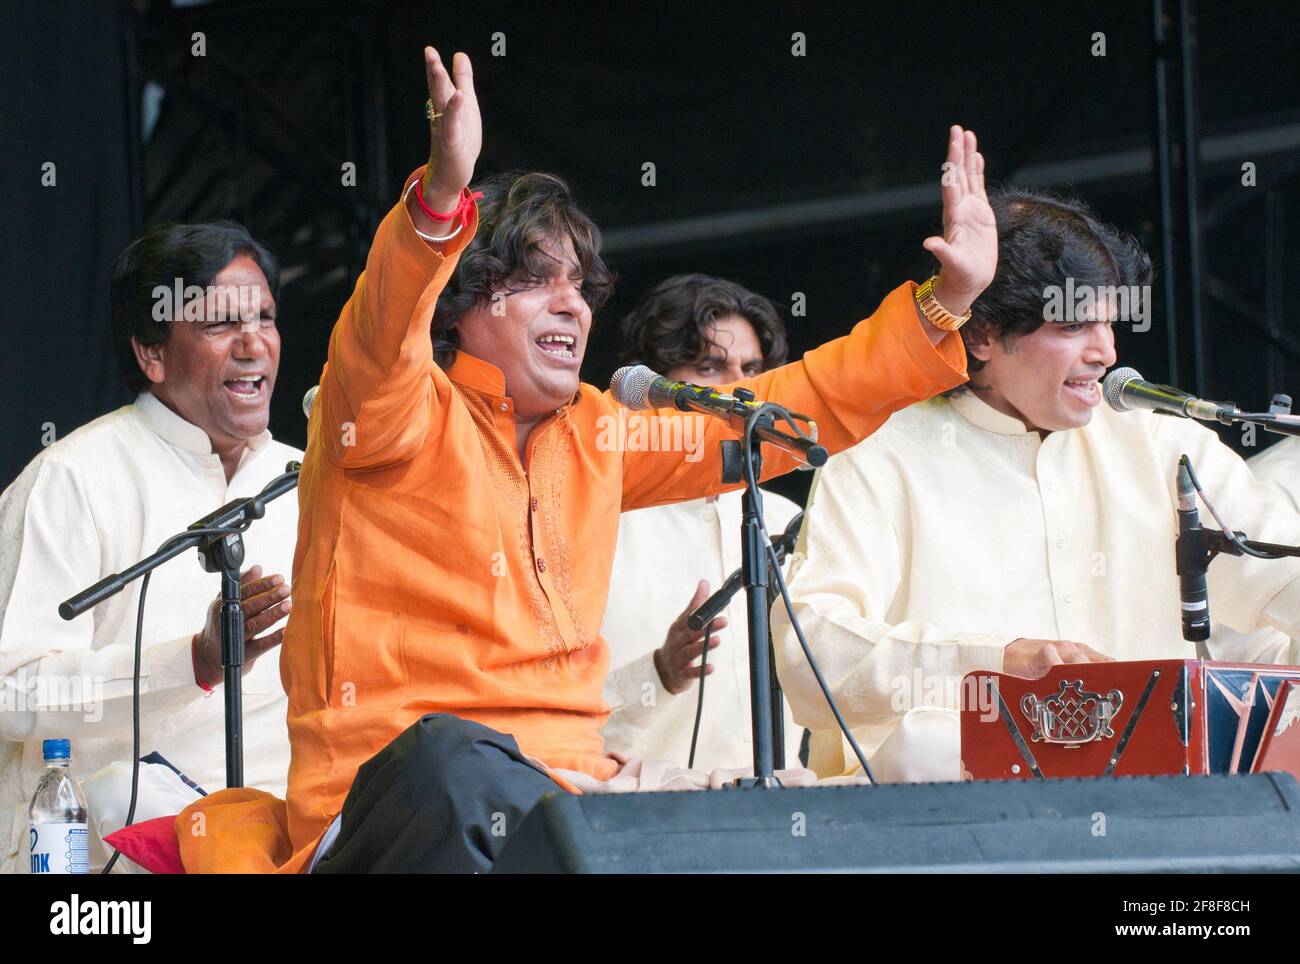 Pakistani, qawwali singer, Faiz ali Faiz performing at the Womad Festival, UK, July 30, 2011. Stock Photo